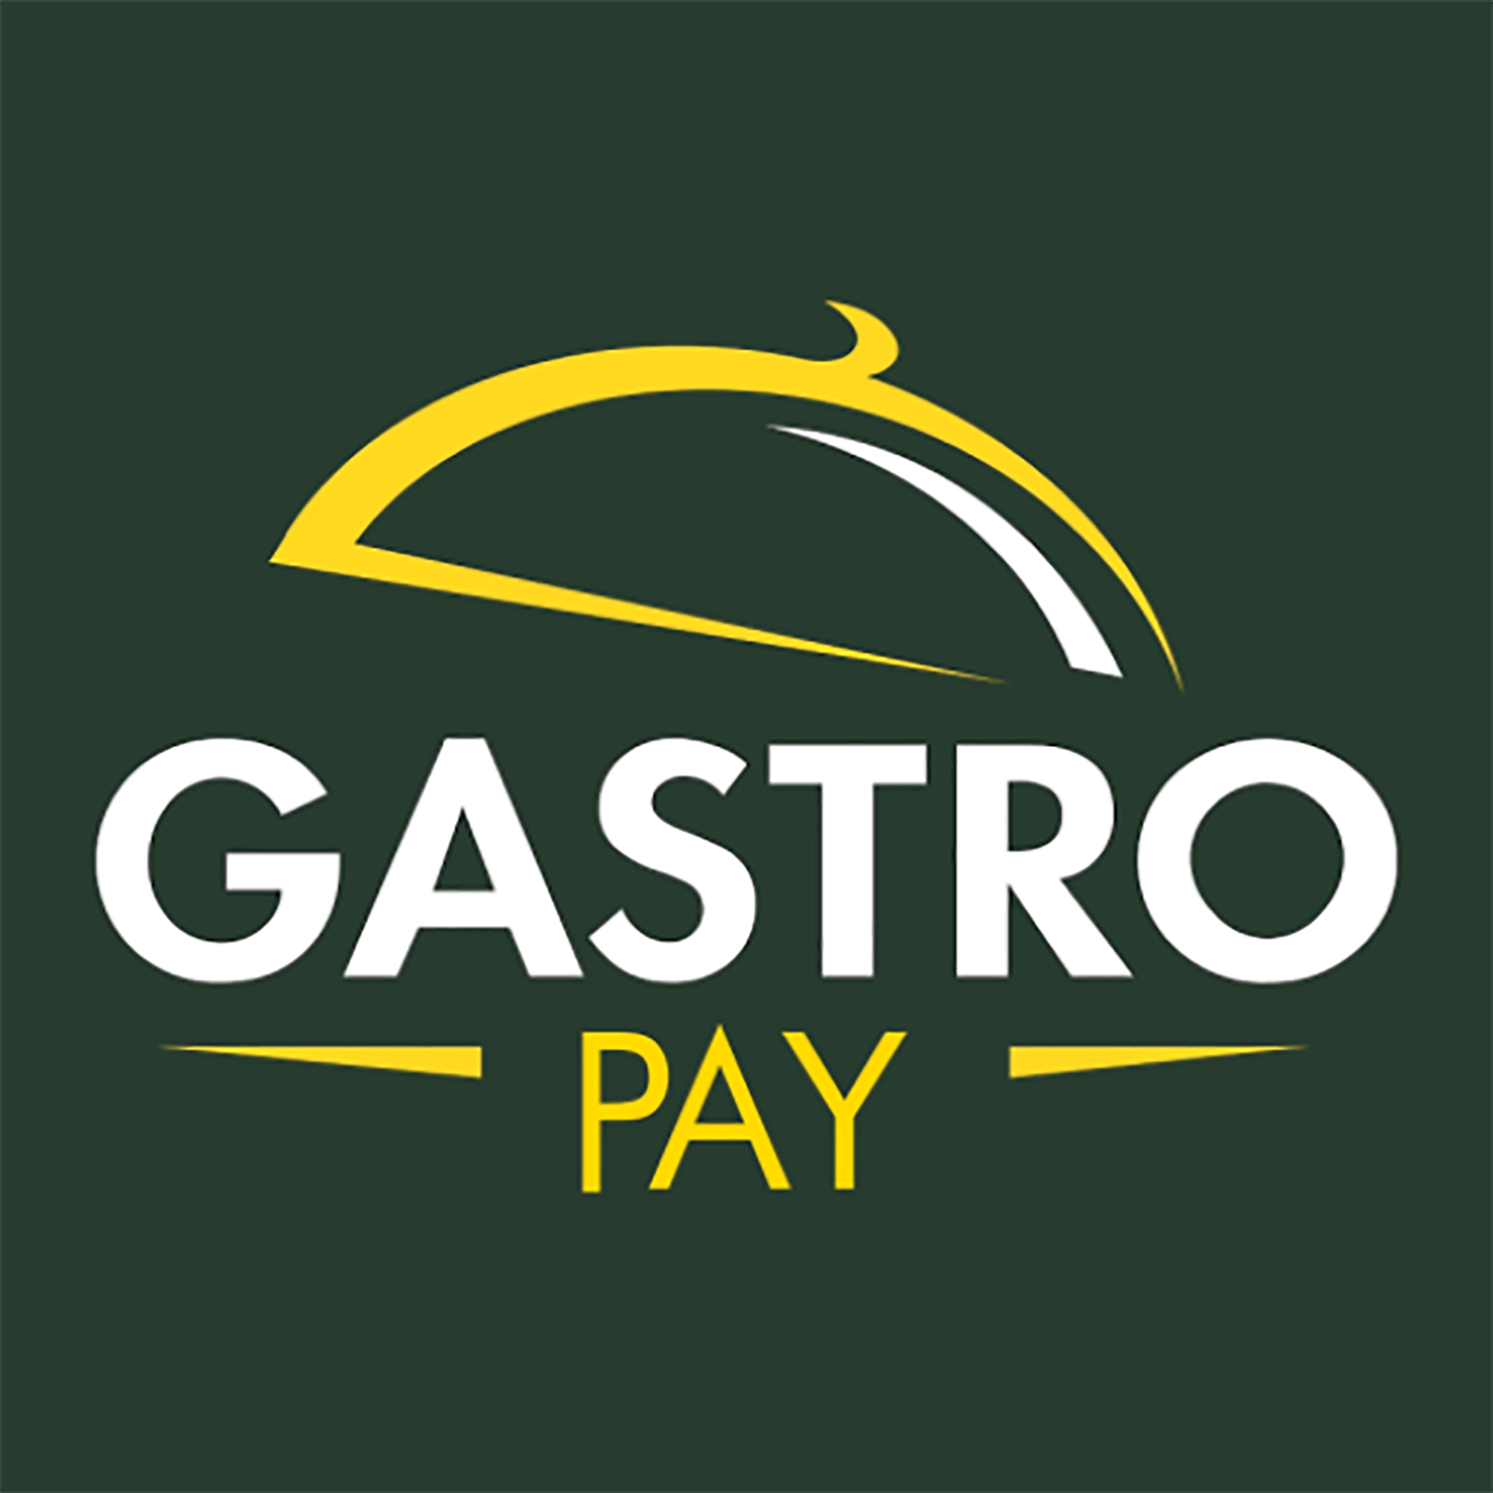 GastroClub Restoran Ödemelerini GastroPay ile Kolaylaştırıyor